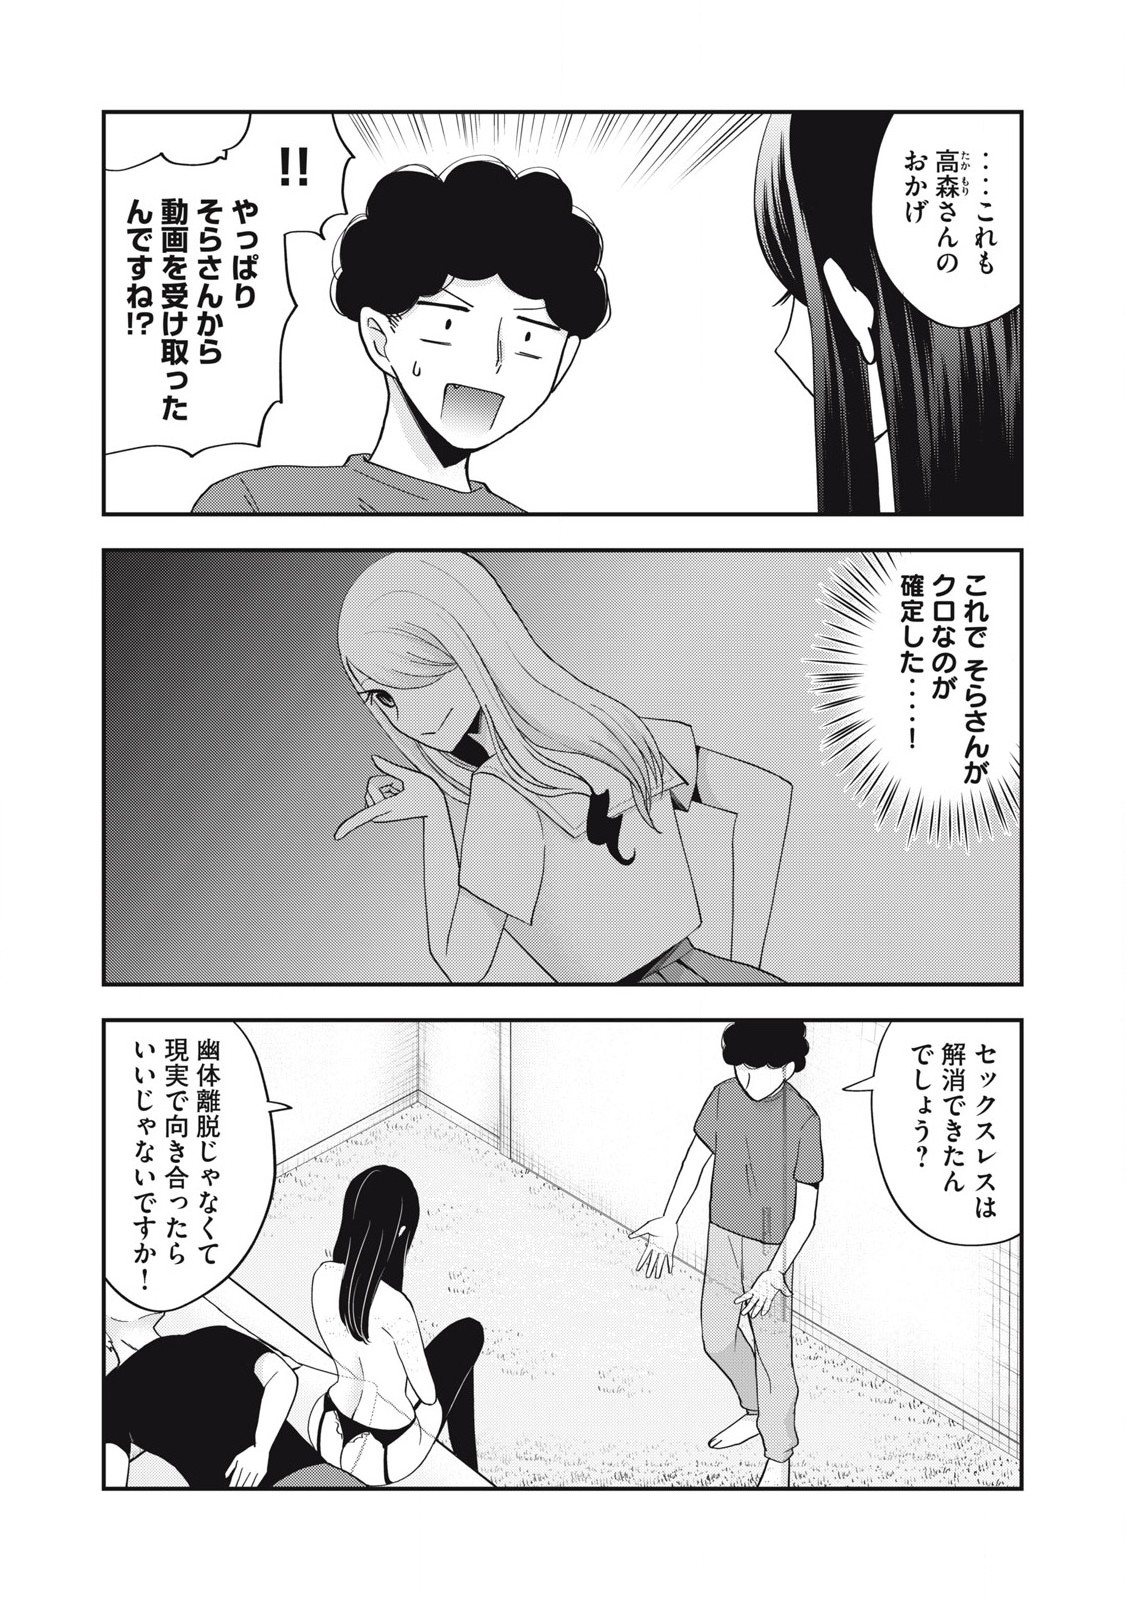 Yumeutsutsu no Hana no Sono - Chapter 25 - Page 10